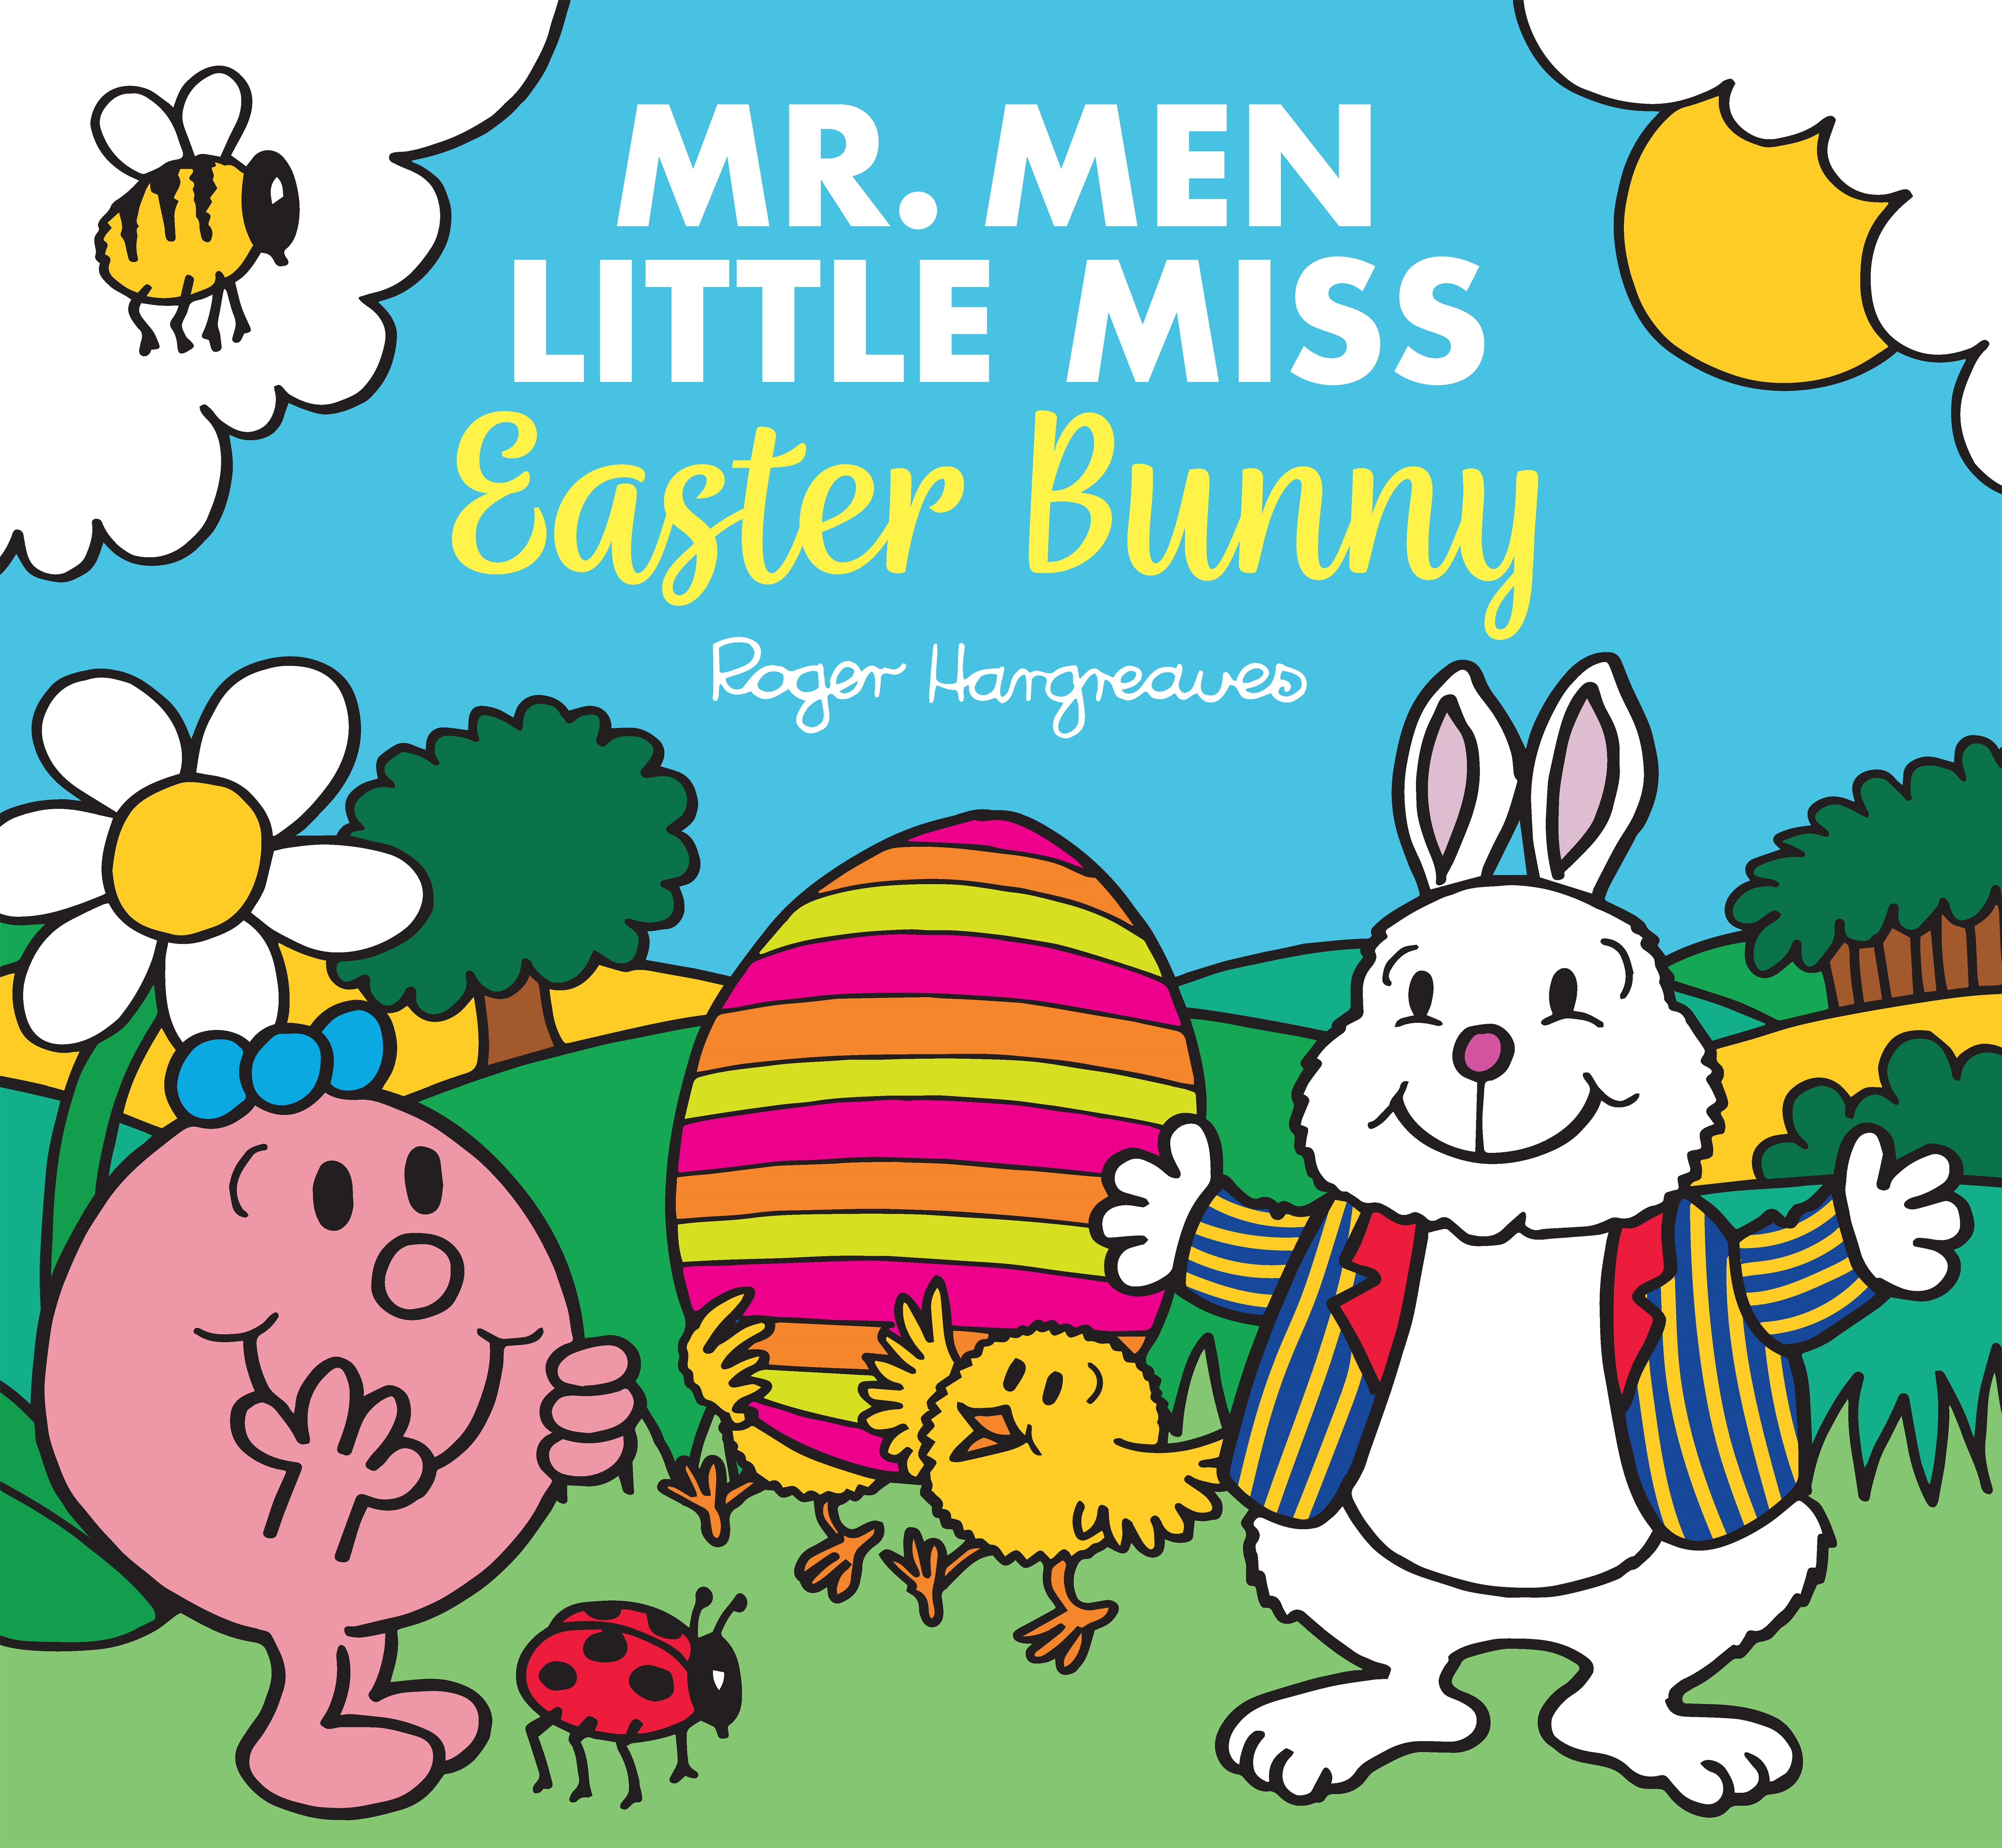 Mr. Men Little Miss: Easter Bunny by Roger Hargreaves - Penguin